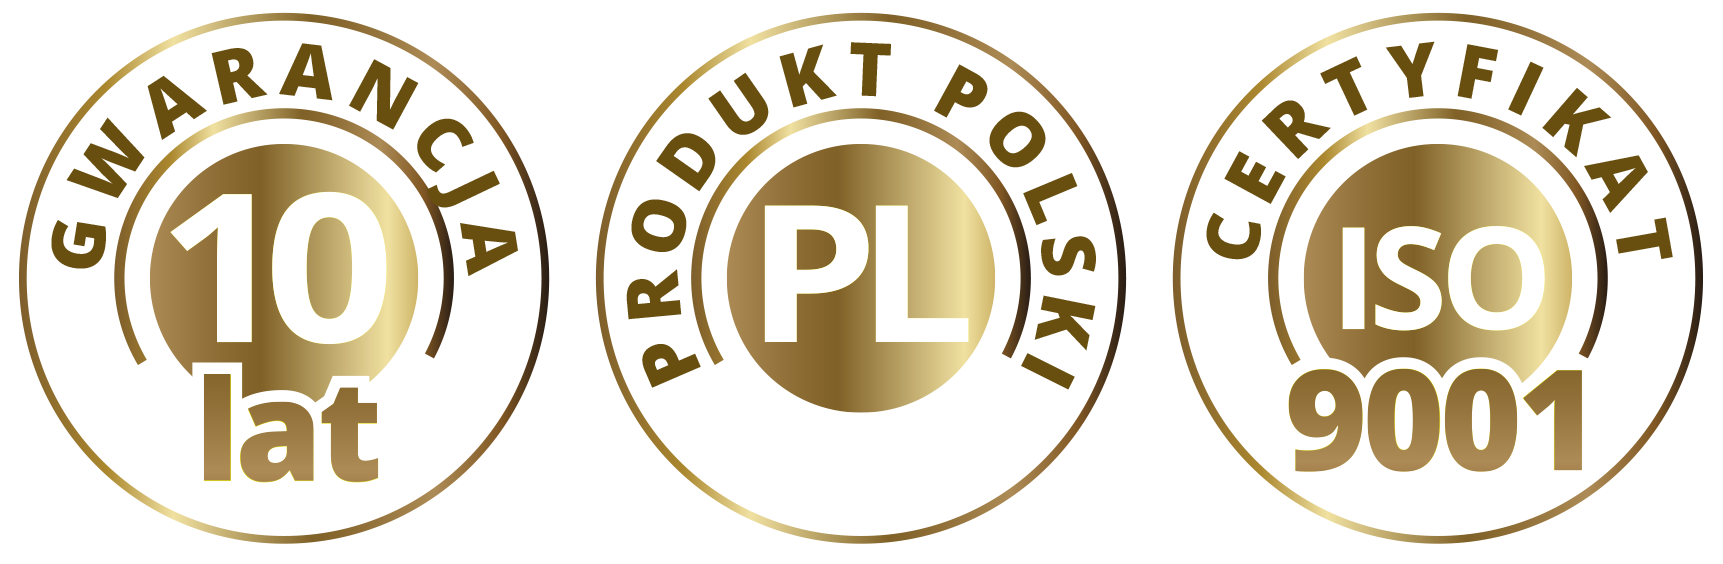 Gwarancja jakości, certyfikat ISO, polska produkcja